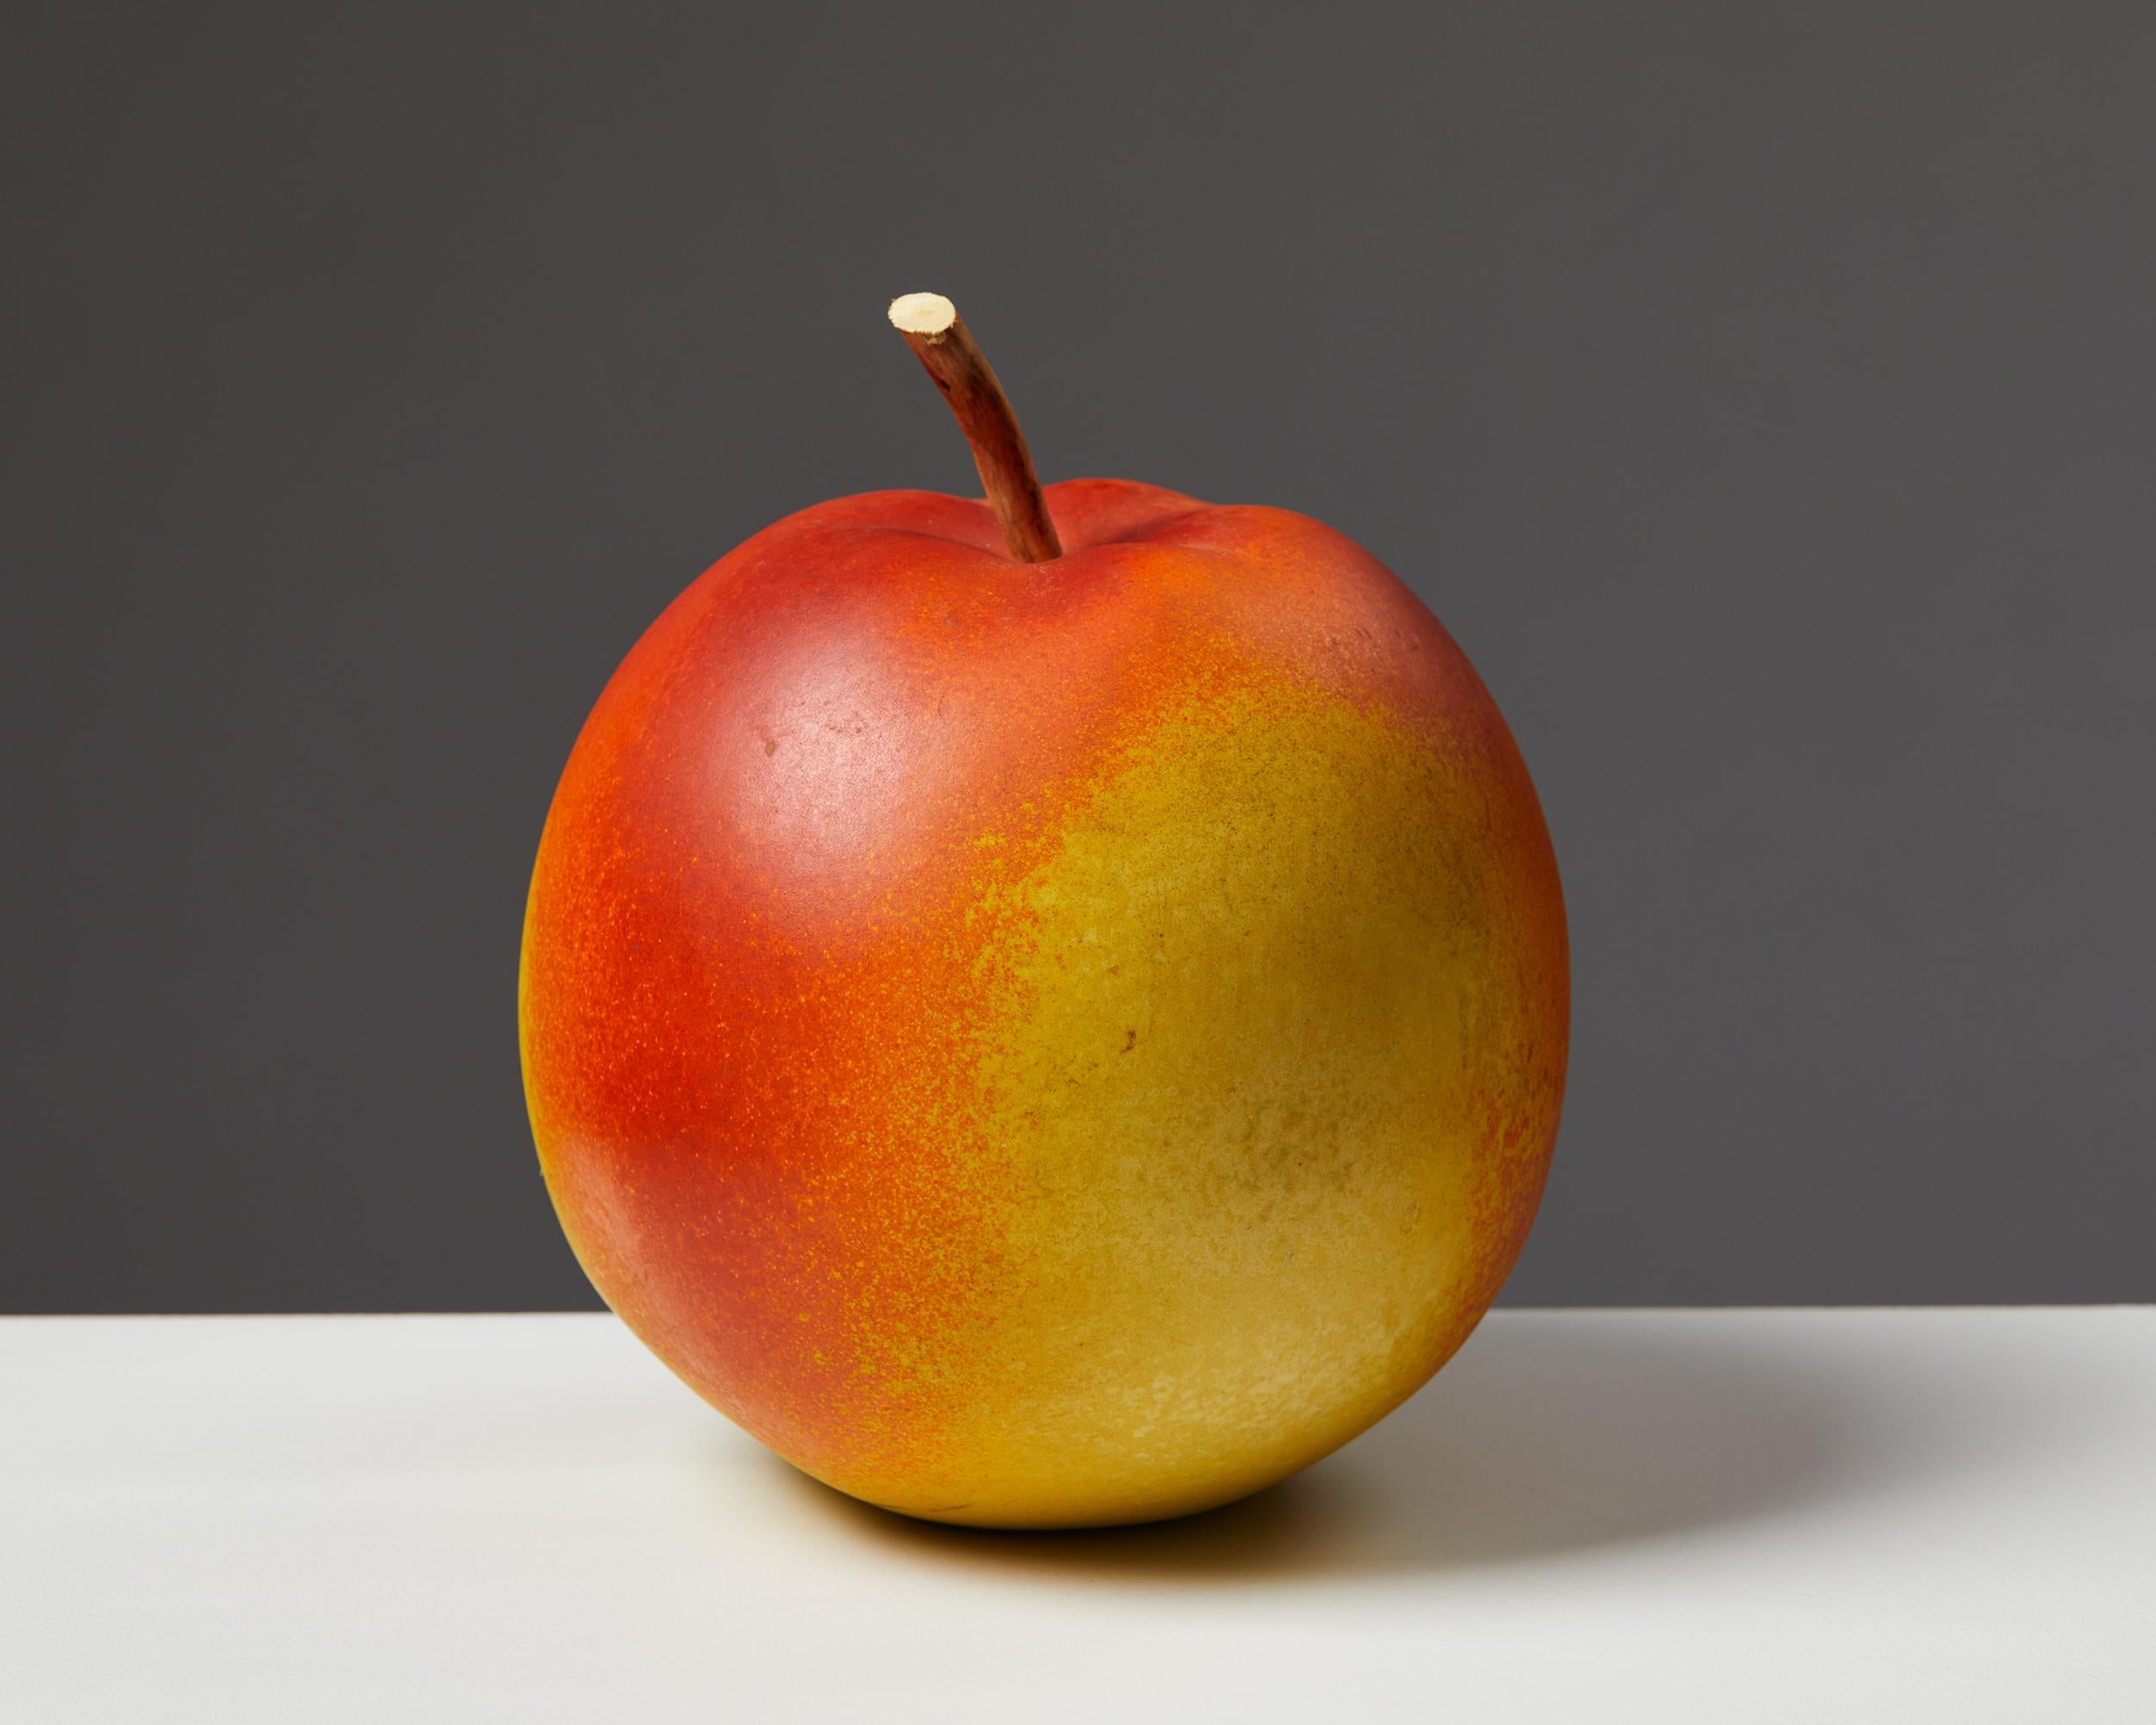 Sculpture de pomme de Per Hammarström,
Suède, années 1980 / 1990.
Grès.

Signé.

Mesures : Hauteur : 17 cm / 6 3/4 ''
Diamètre : 15 cm / 6''.